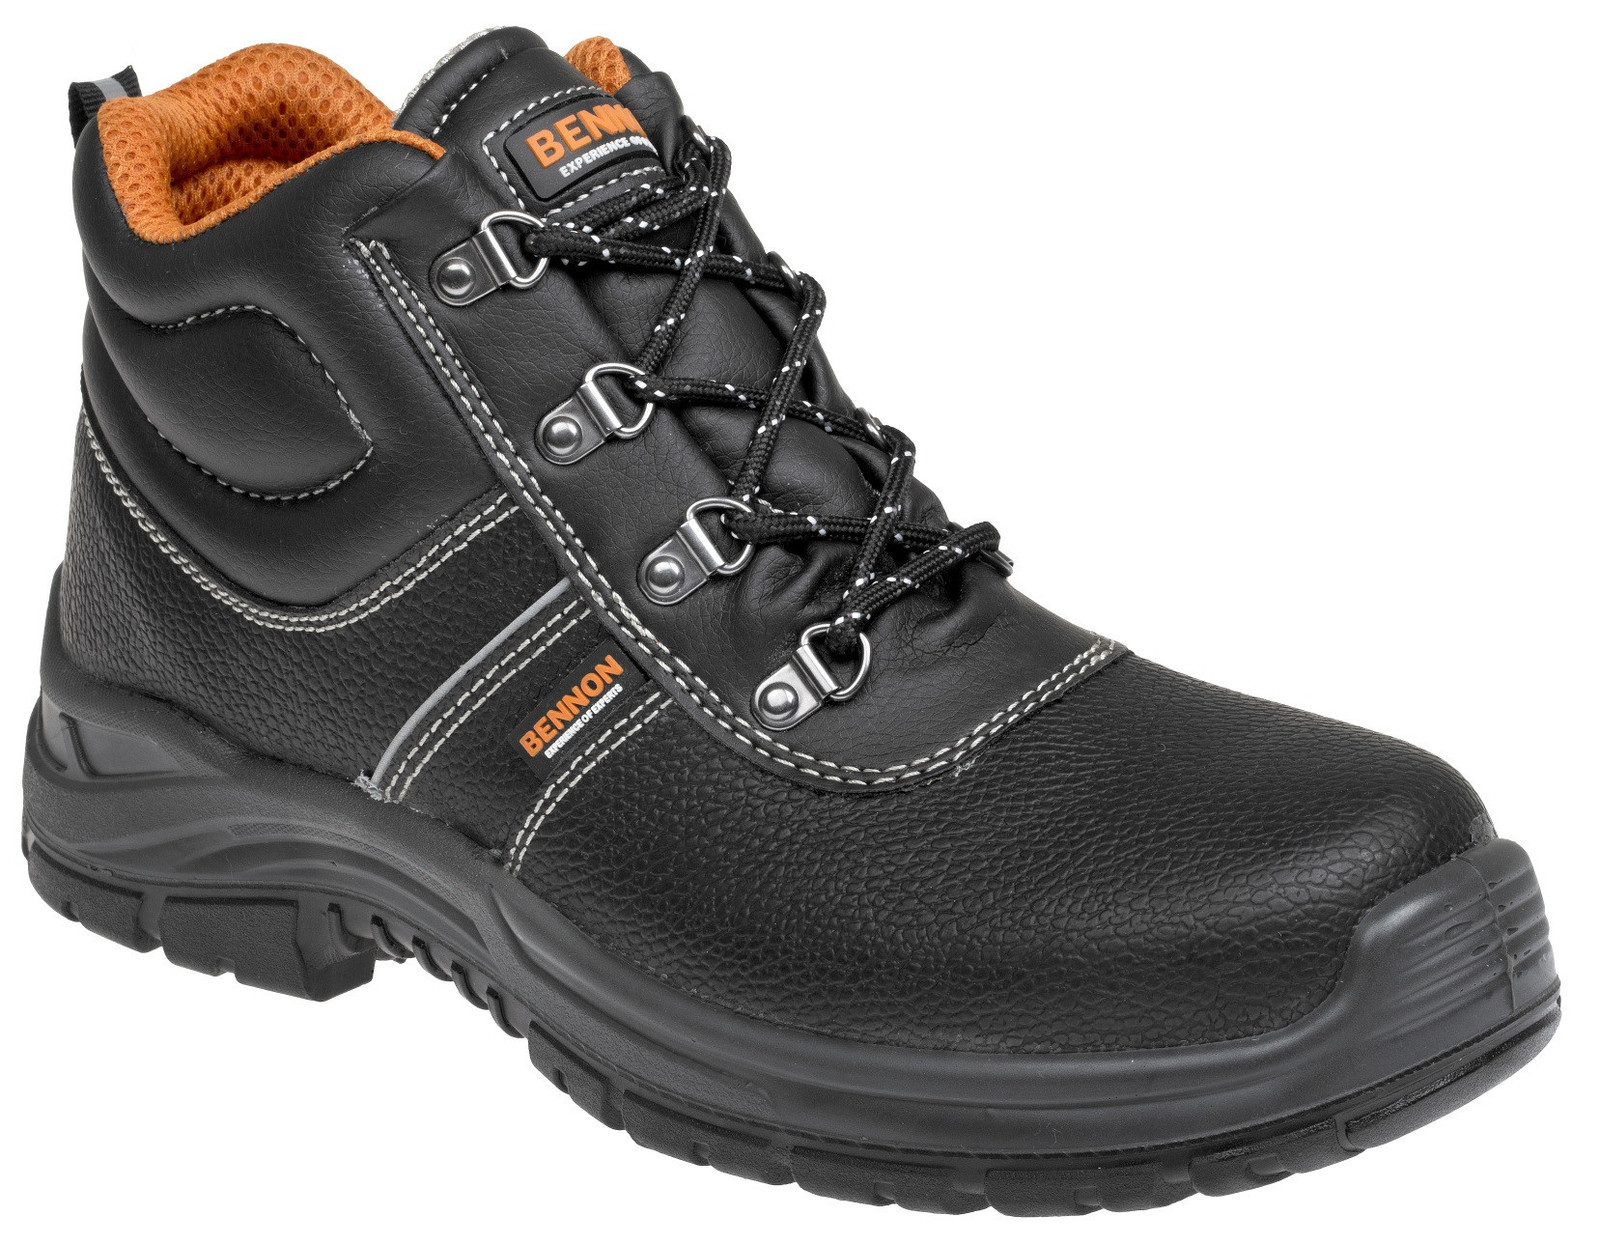 Bezpečnostná obuv Bennon Basic S3 - veľkosť: 37, farba: čierna